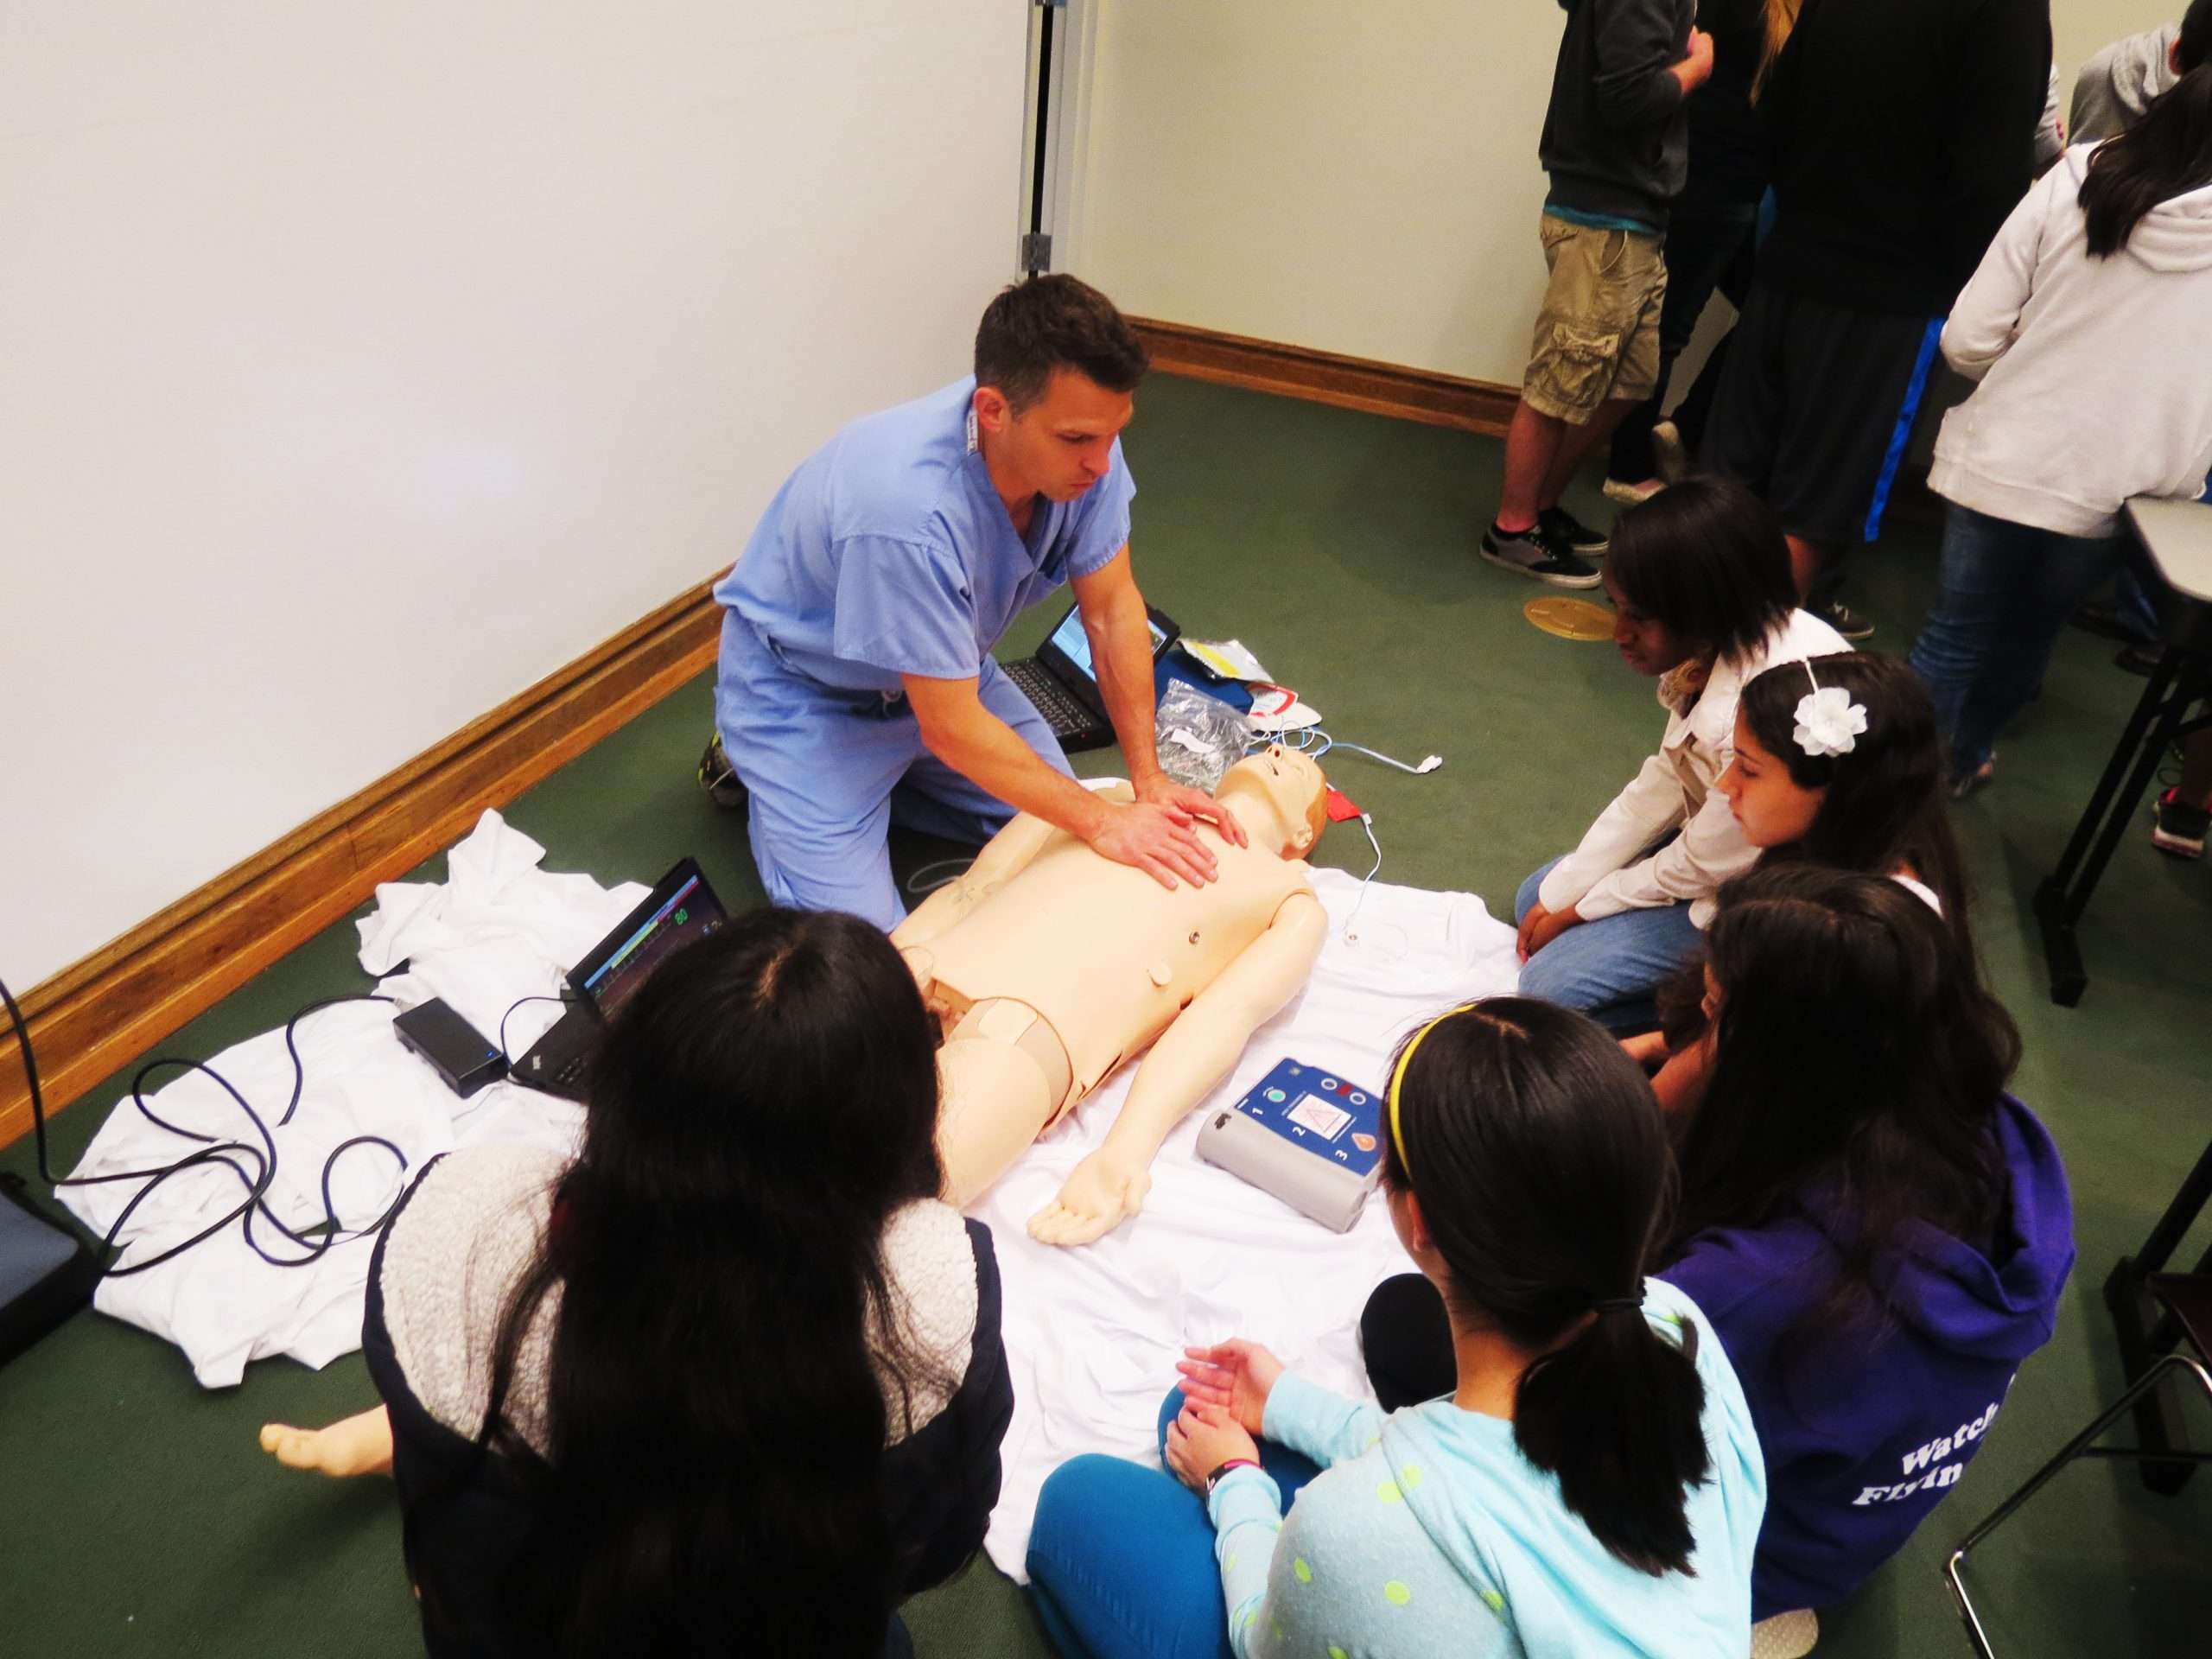 Jason Teaching CPR